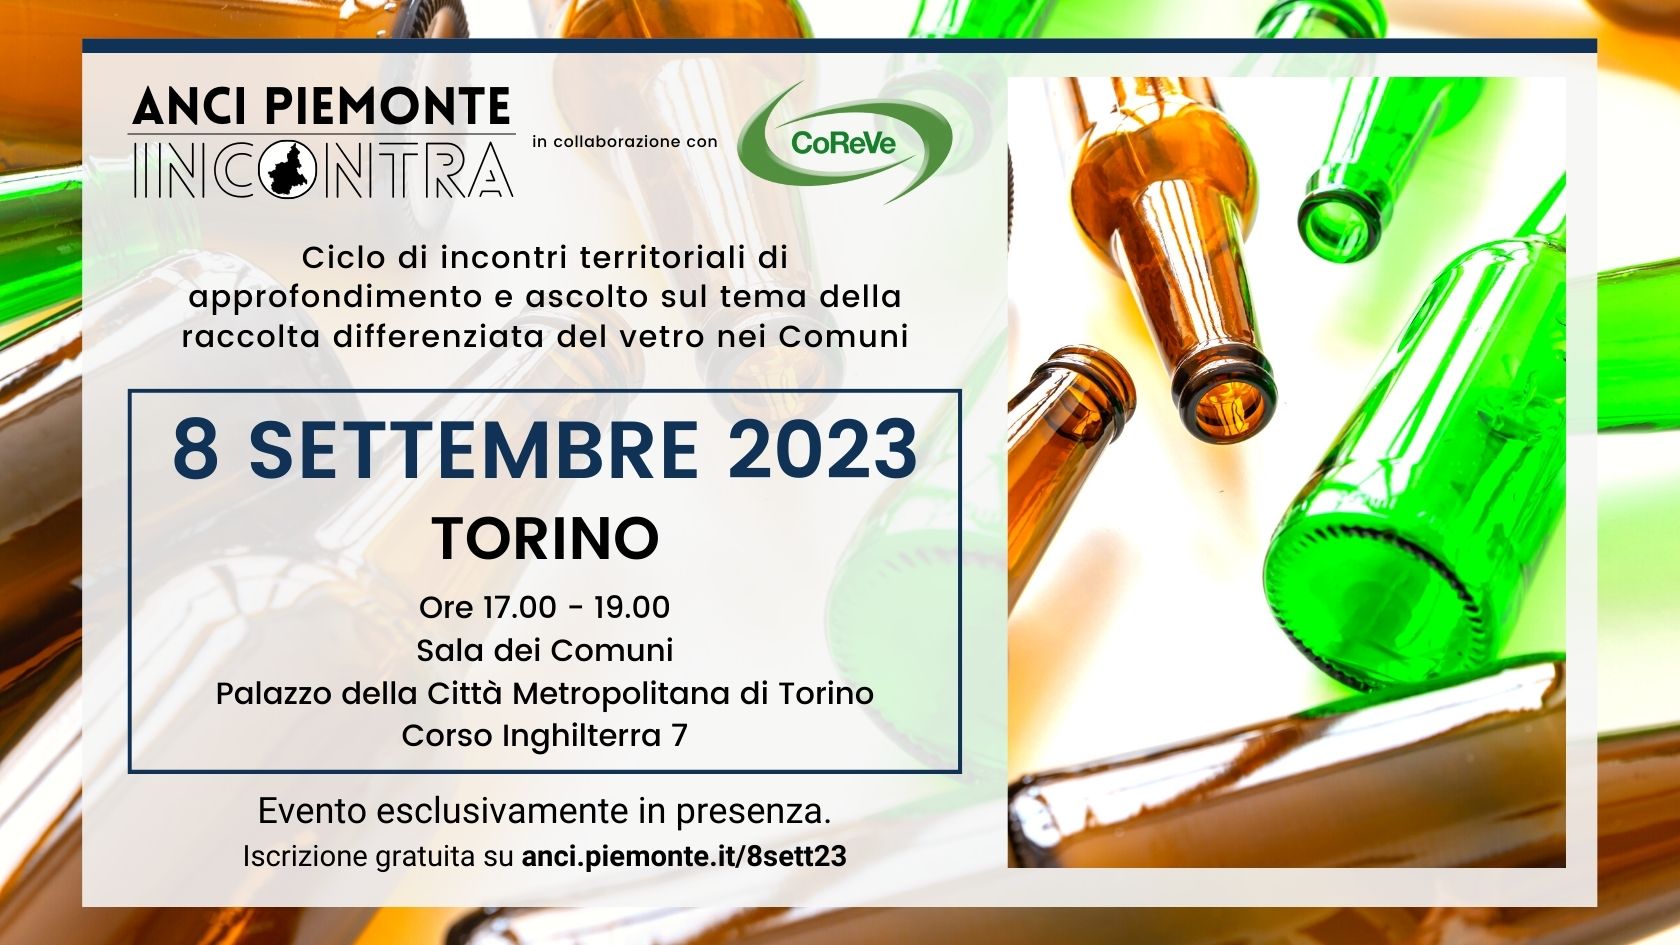 ANCI Piemonte Incontra Coreve - 8 settembre 2023